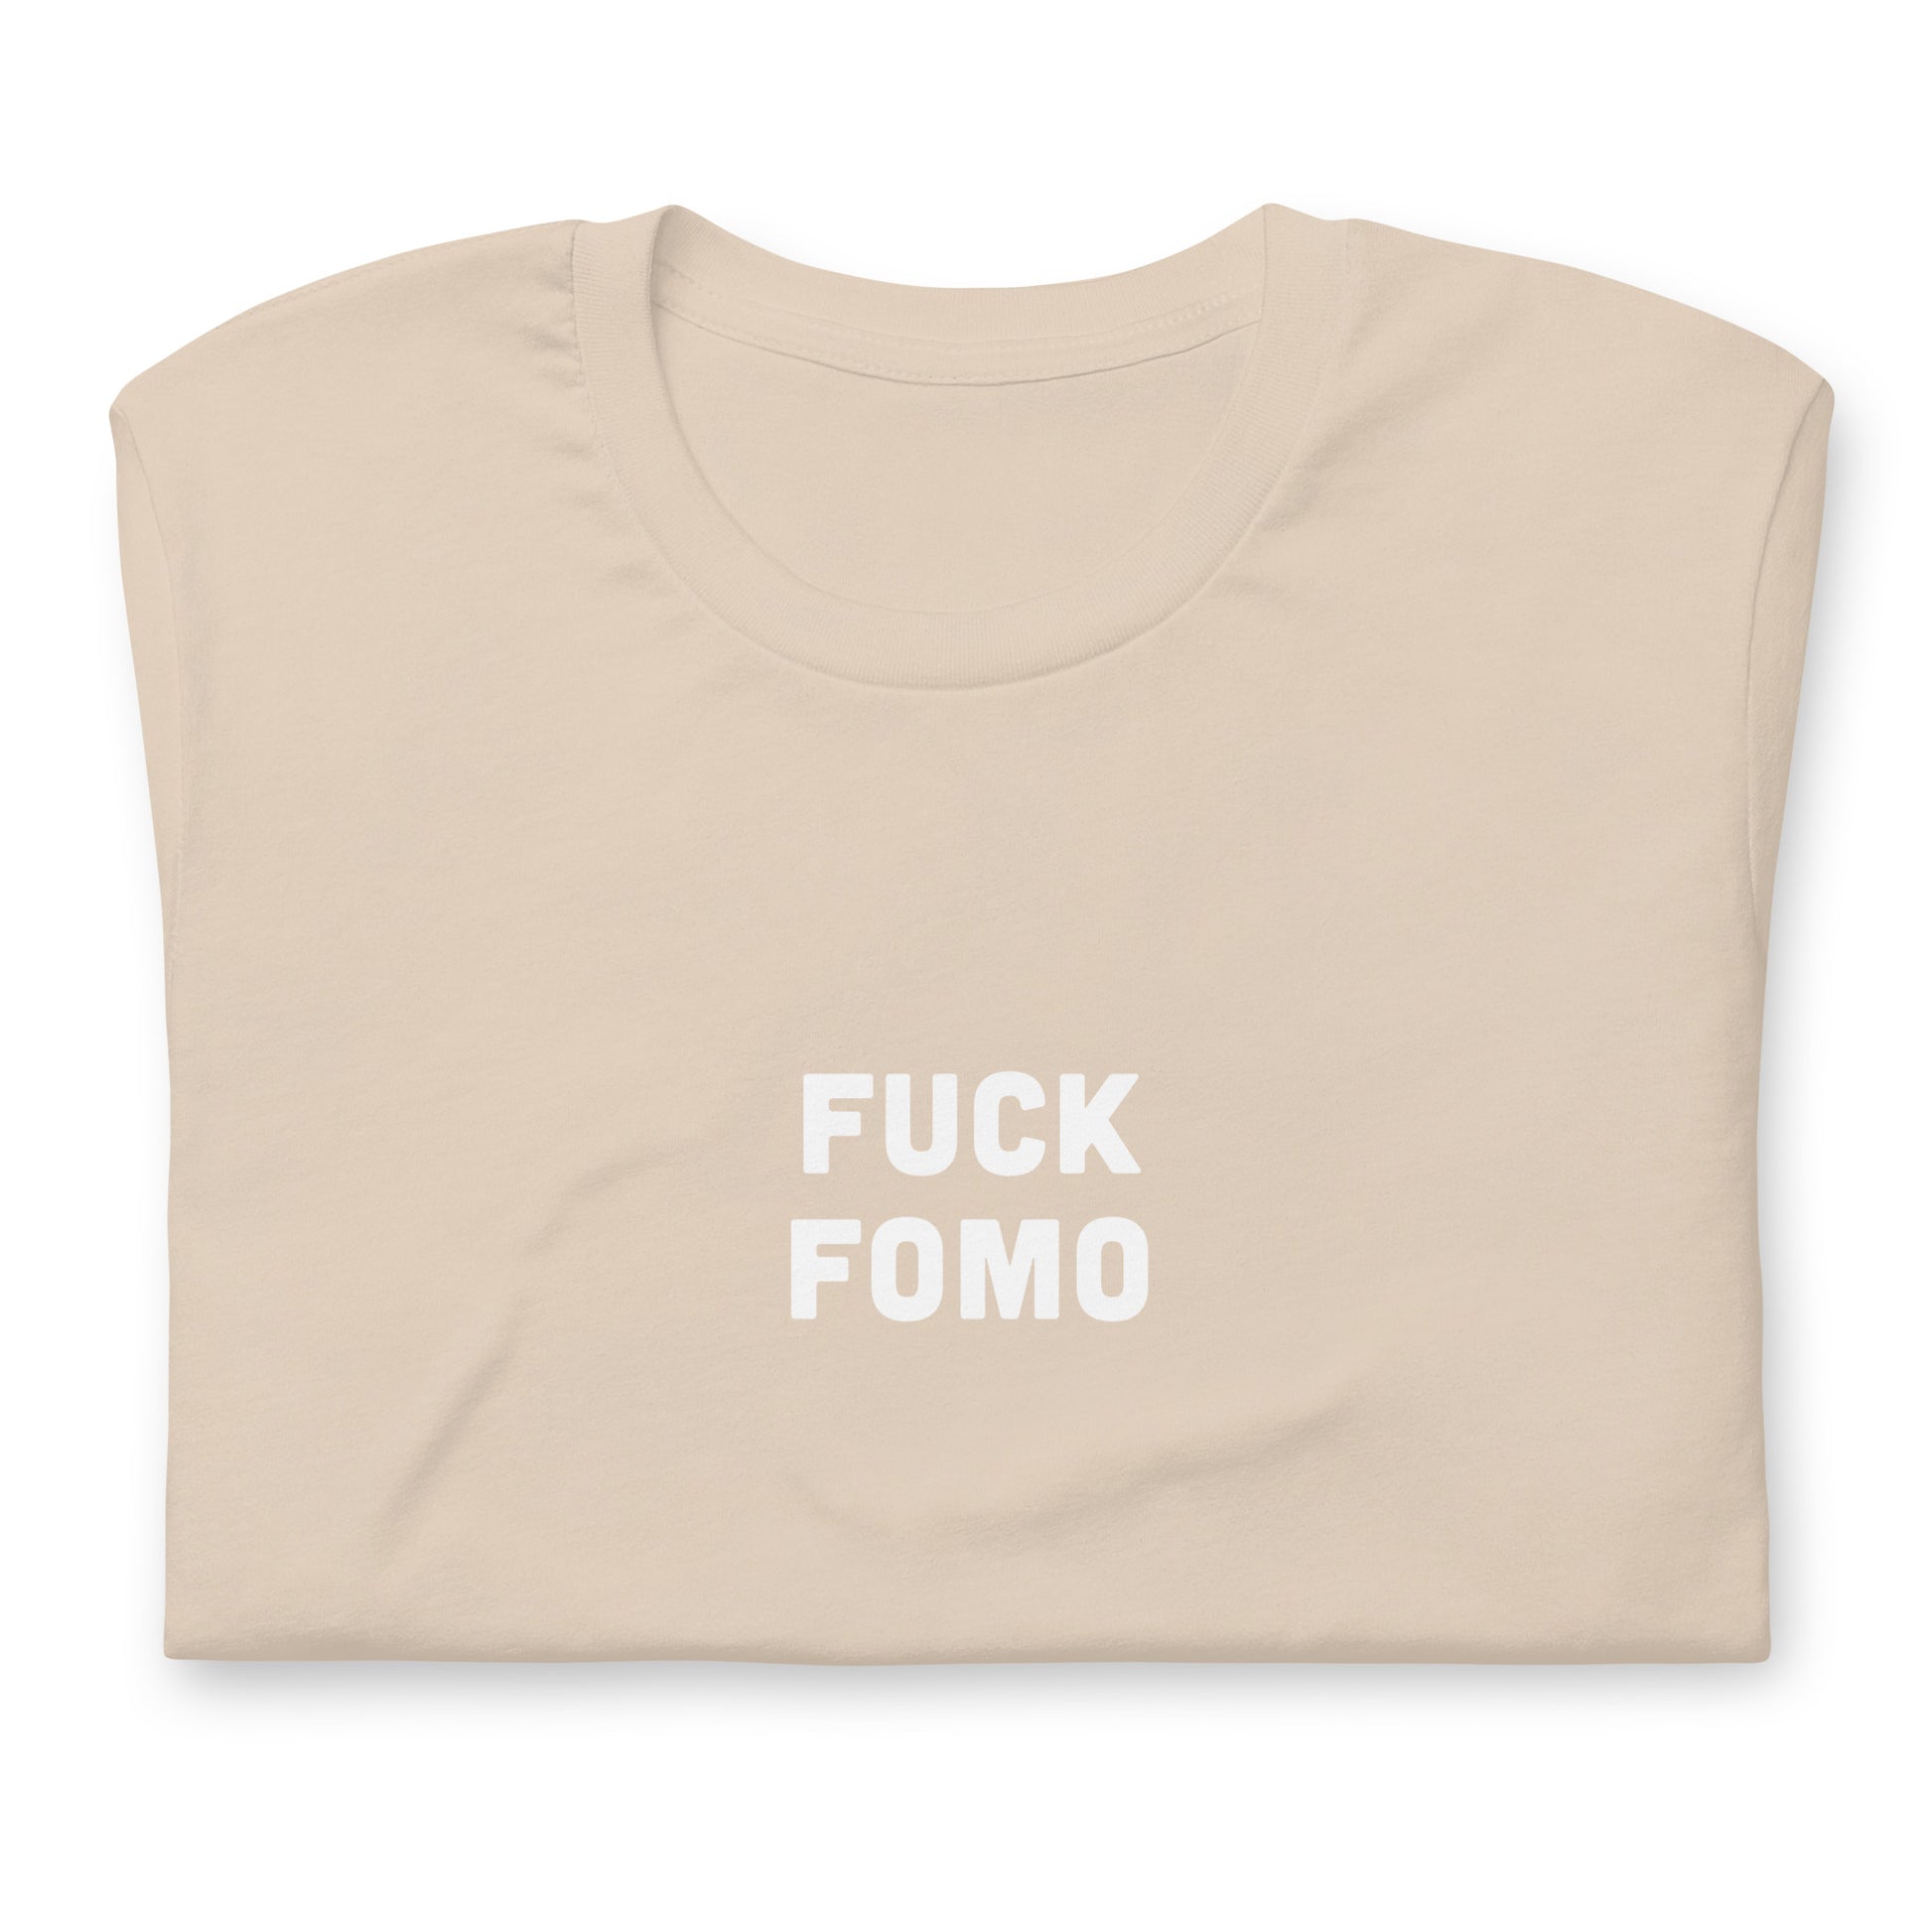 Fuck Fomo T-Shirt Size L Color Asphalt